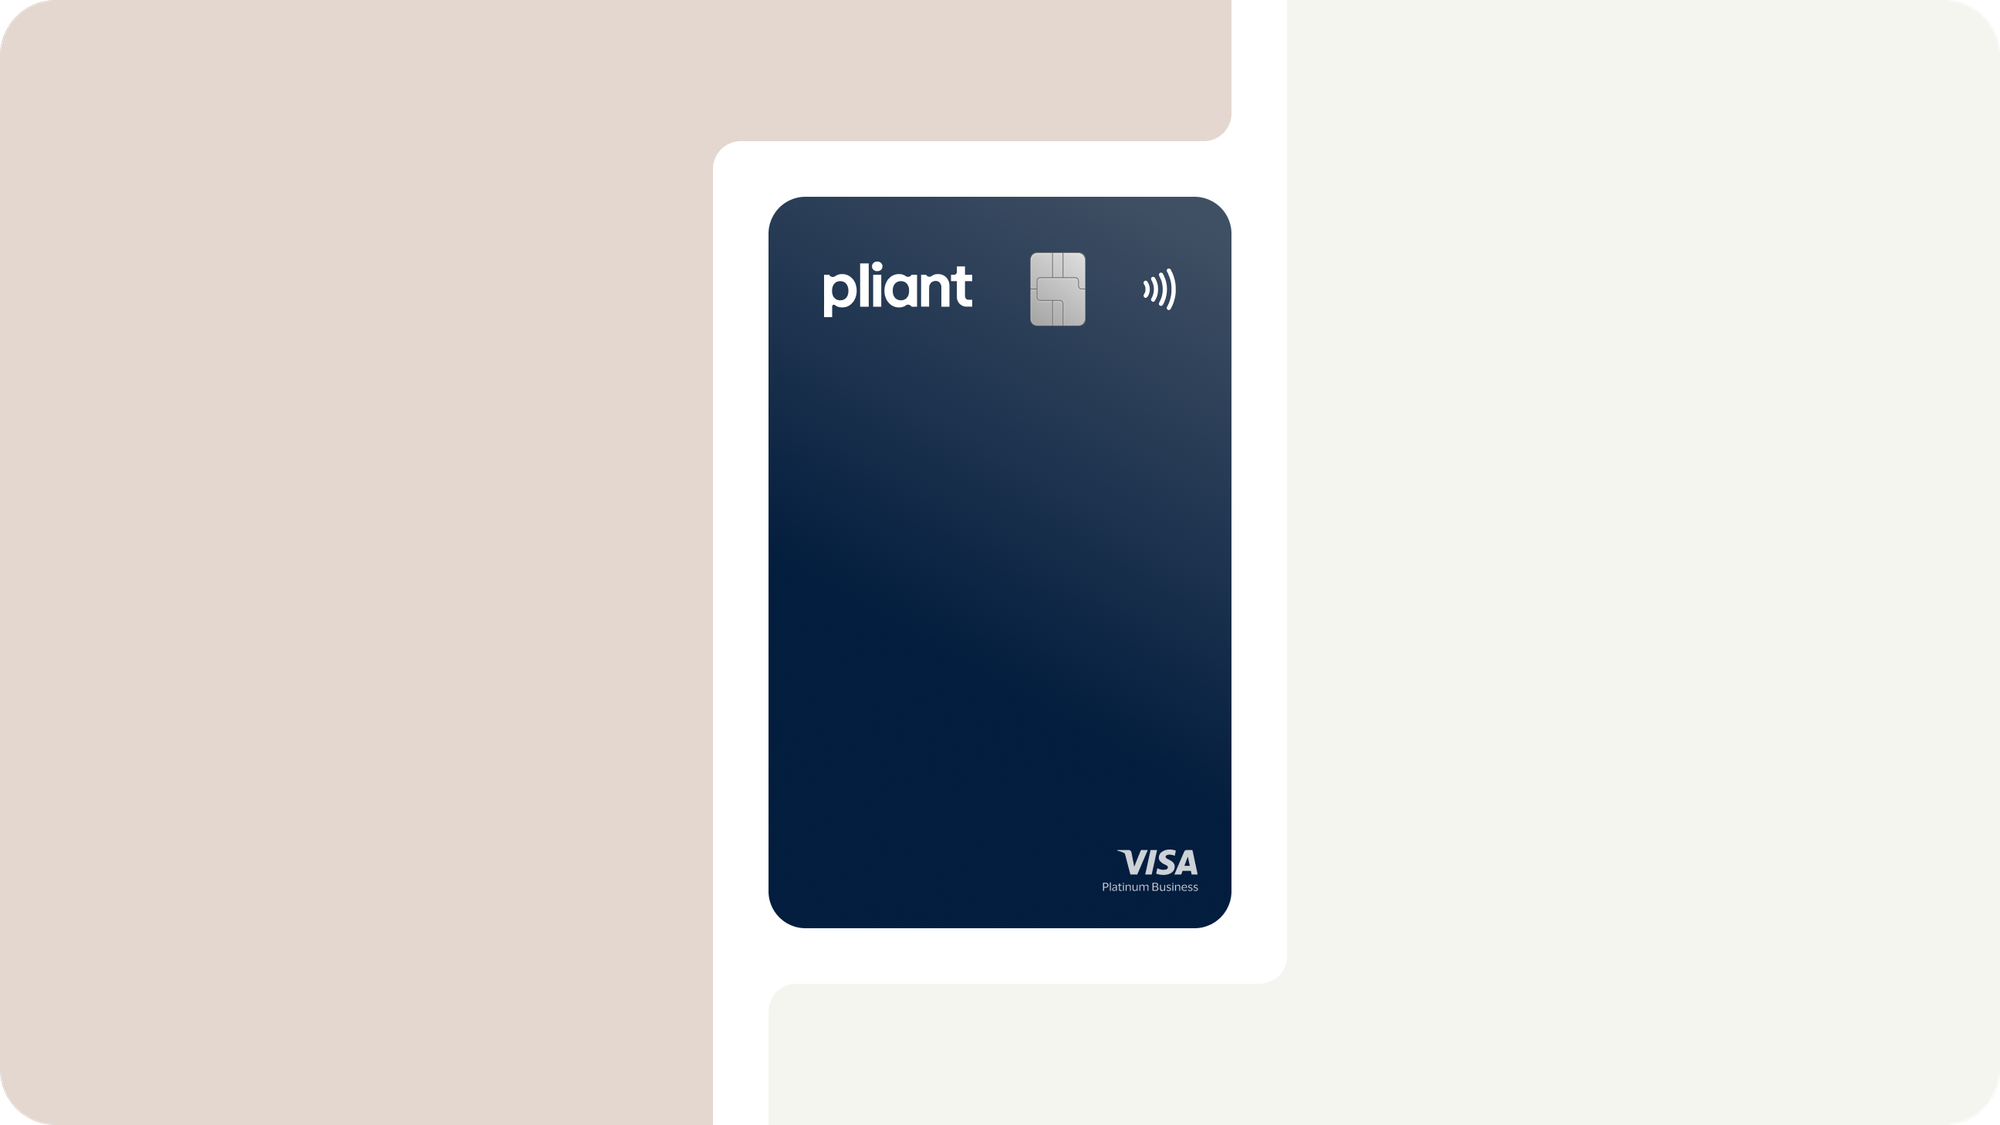 Pliant VISA Platinum Business Cards erleichtern Ihnen jeden Einkauf dank weltweiter Akzeptanz und hohen Limits.